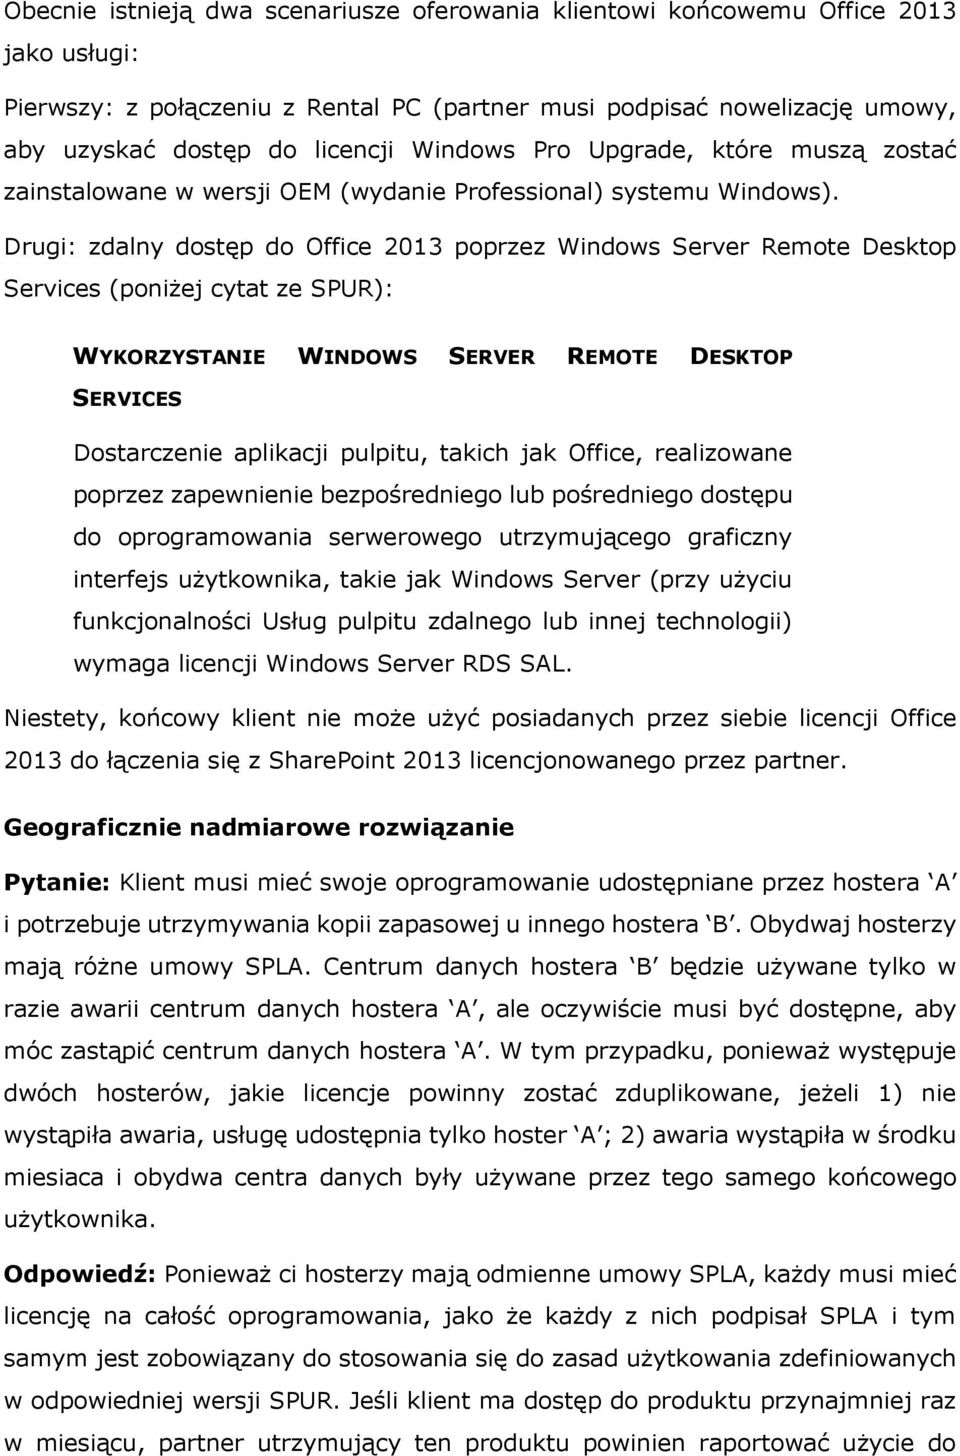 Drugi: zdalny dostęp do Office 2013 poprzez Windows Server Remote Desktop Services (poniżej cytat ze SPUR): WYKORZYSTANIE WINDOWS SERVER REMOTE DESKTOP SERVICES Dostarczenie aplikacji pulpitu, takich